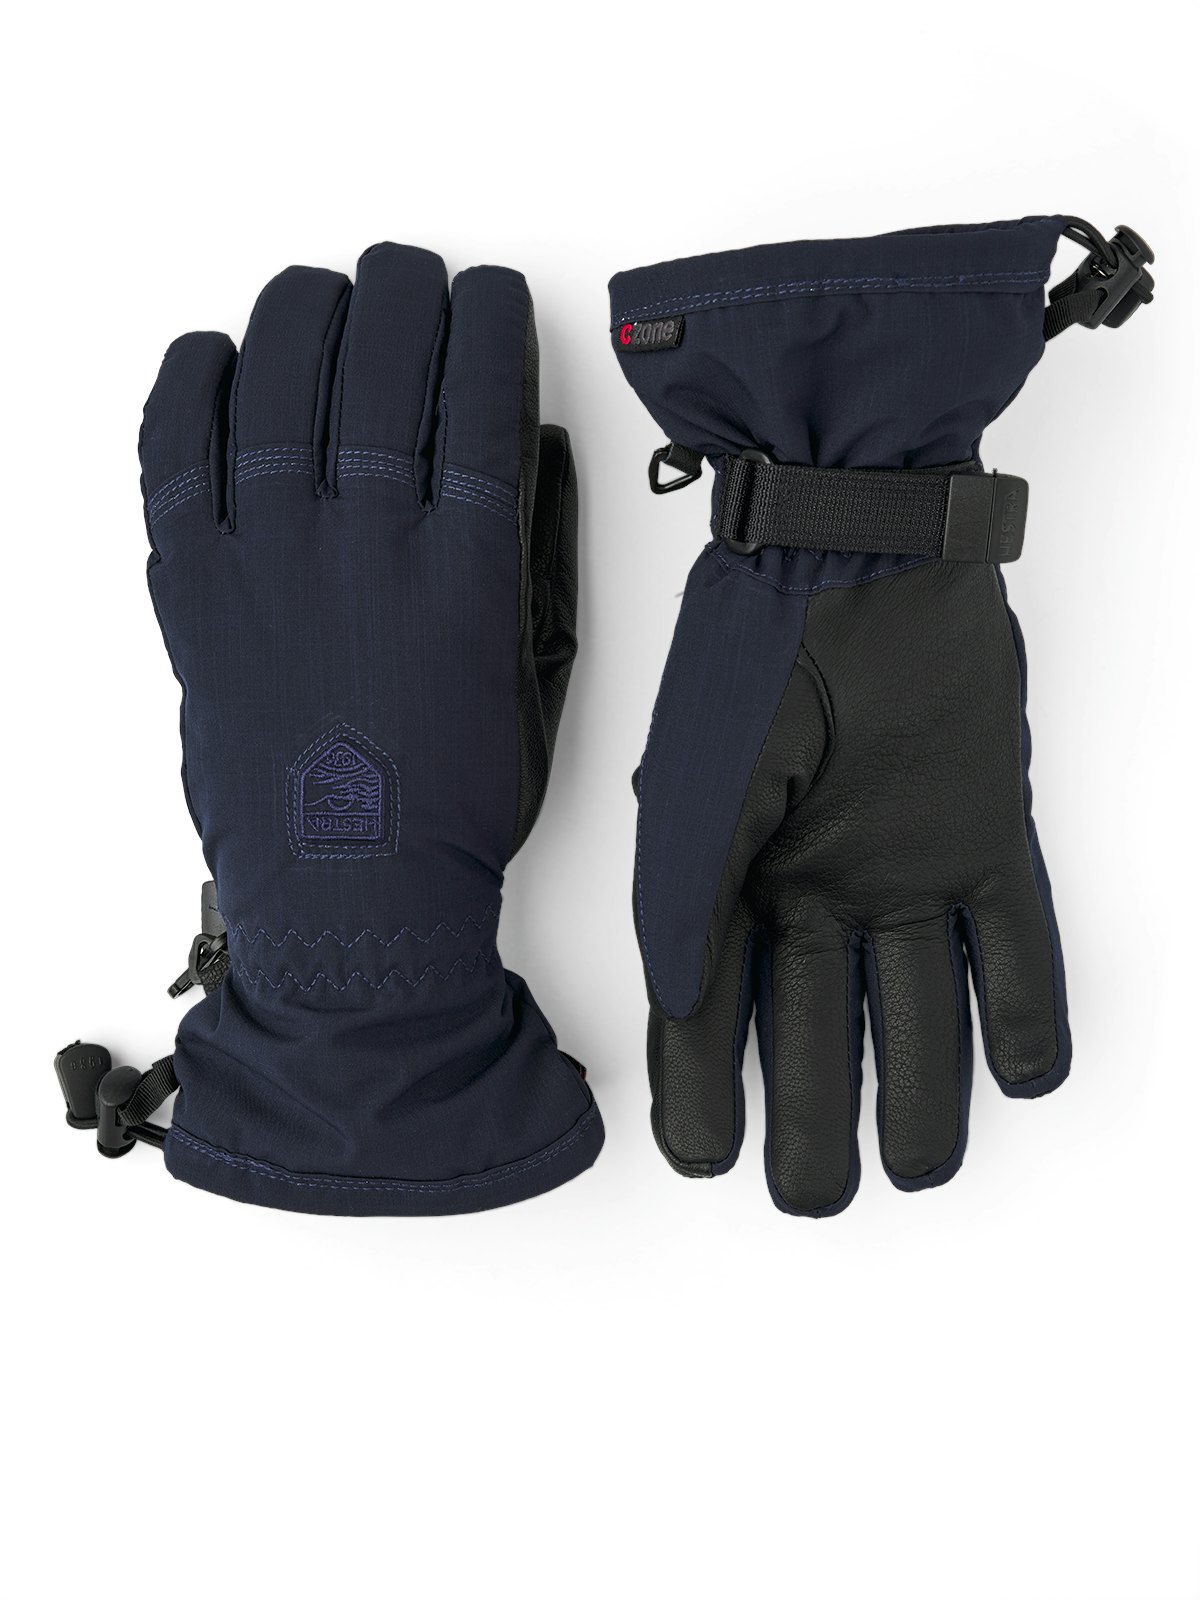 Hestra CZone Primaloft Inverno - 5 Finger Guantes de Esquí Mujer - navy